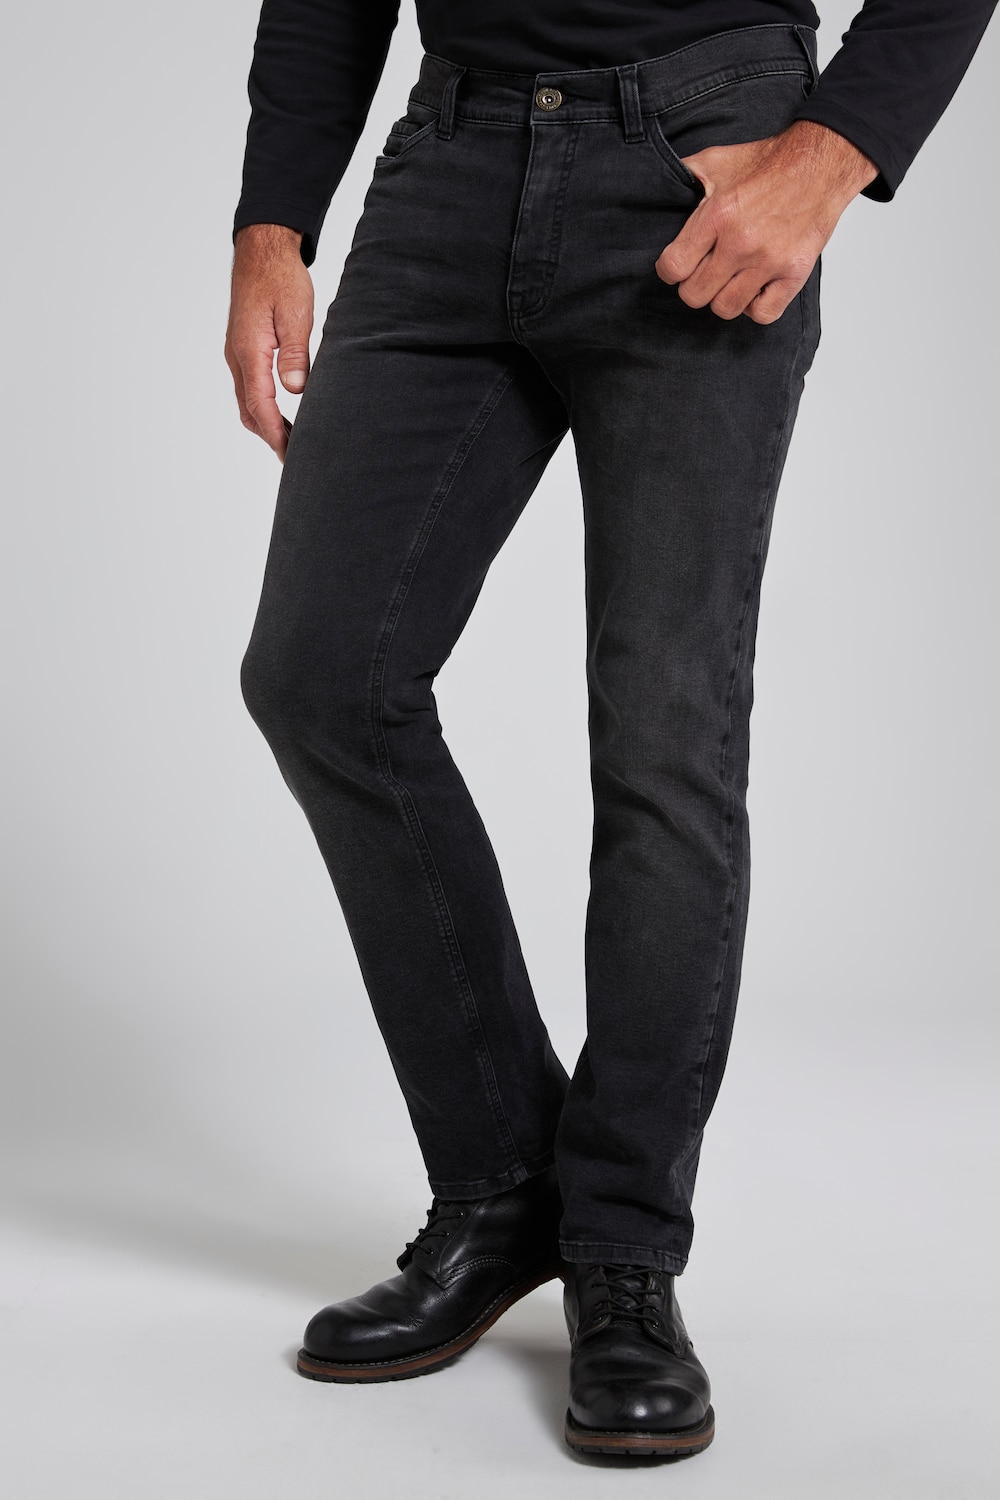 Grote Maten jeans, Heren, zwart, Maat: 56, Katoen/Polyester, JP1880